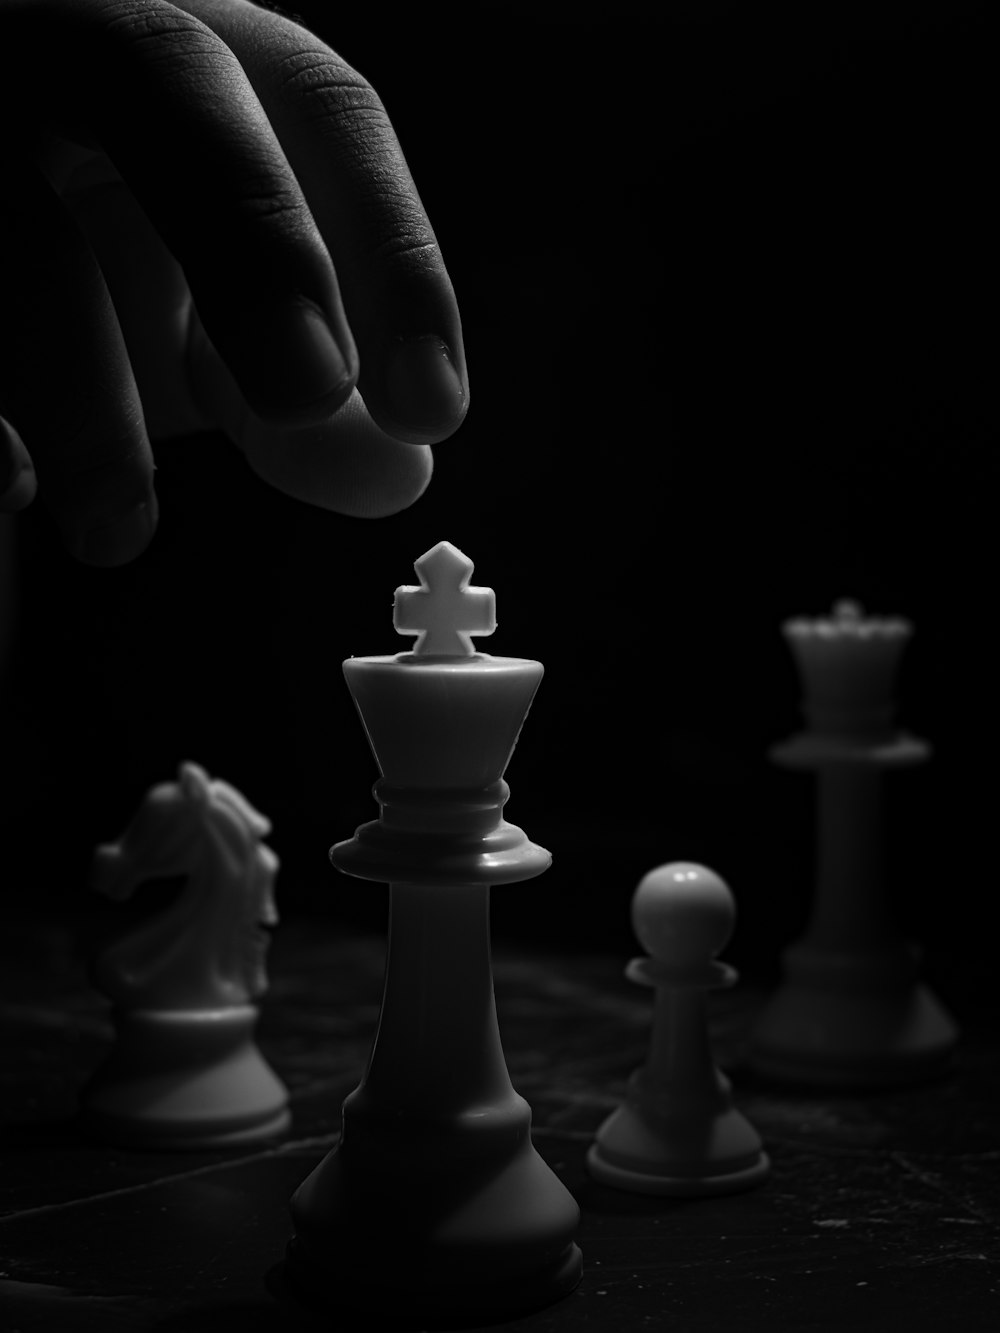 foto in scala di grigi di persona che tiene il pezzo degli scacchi